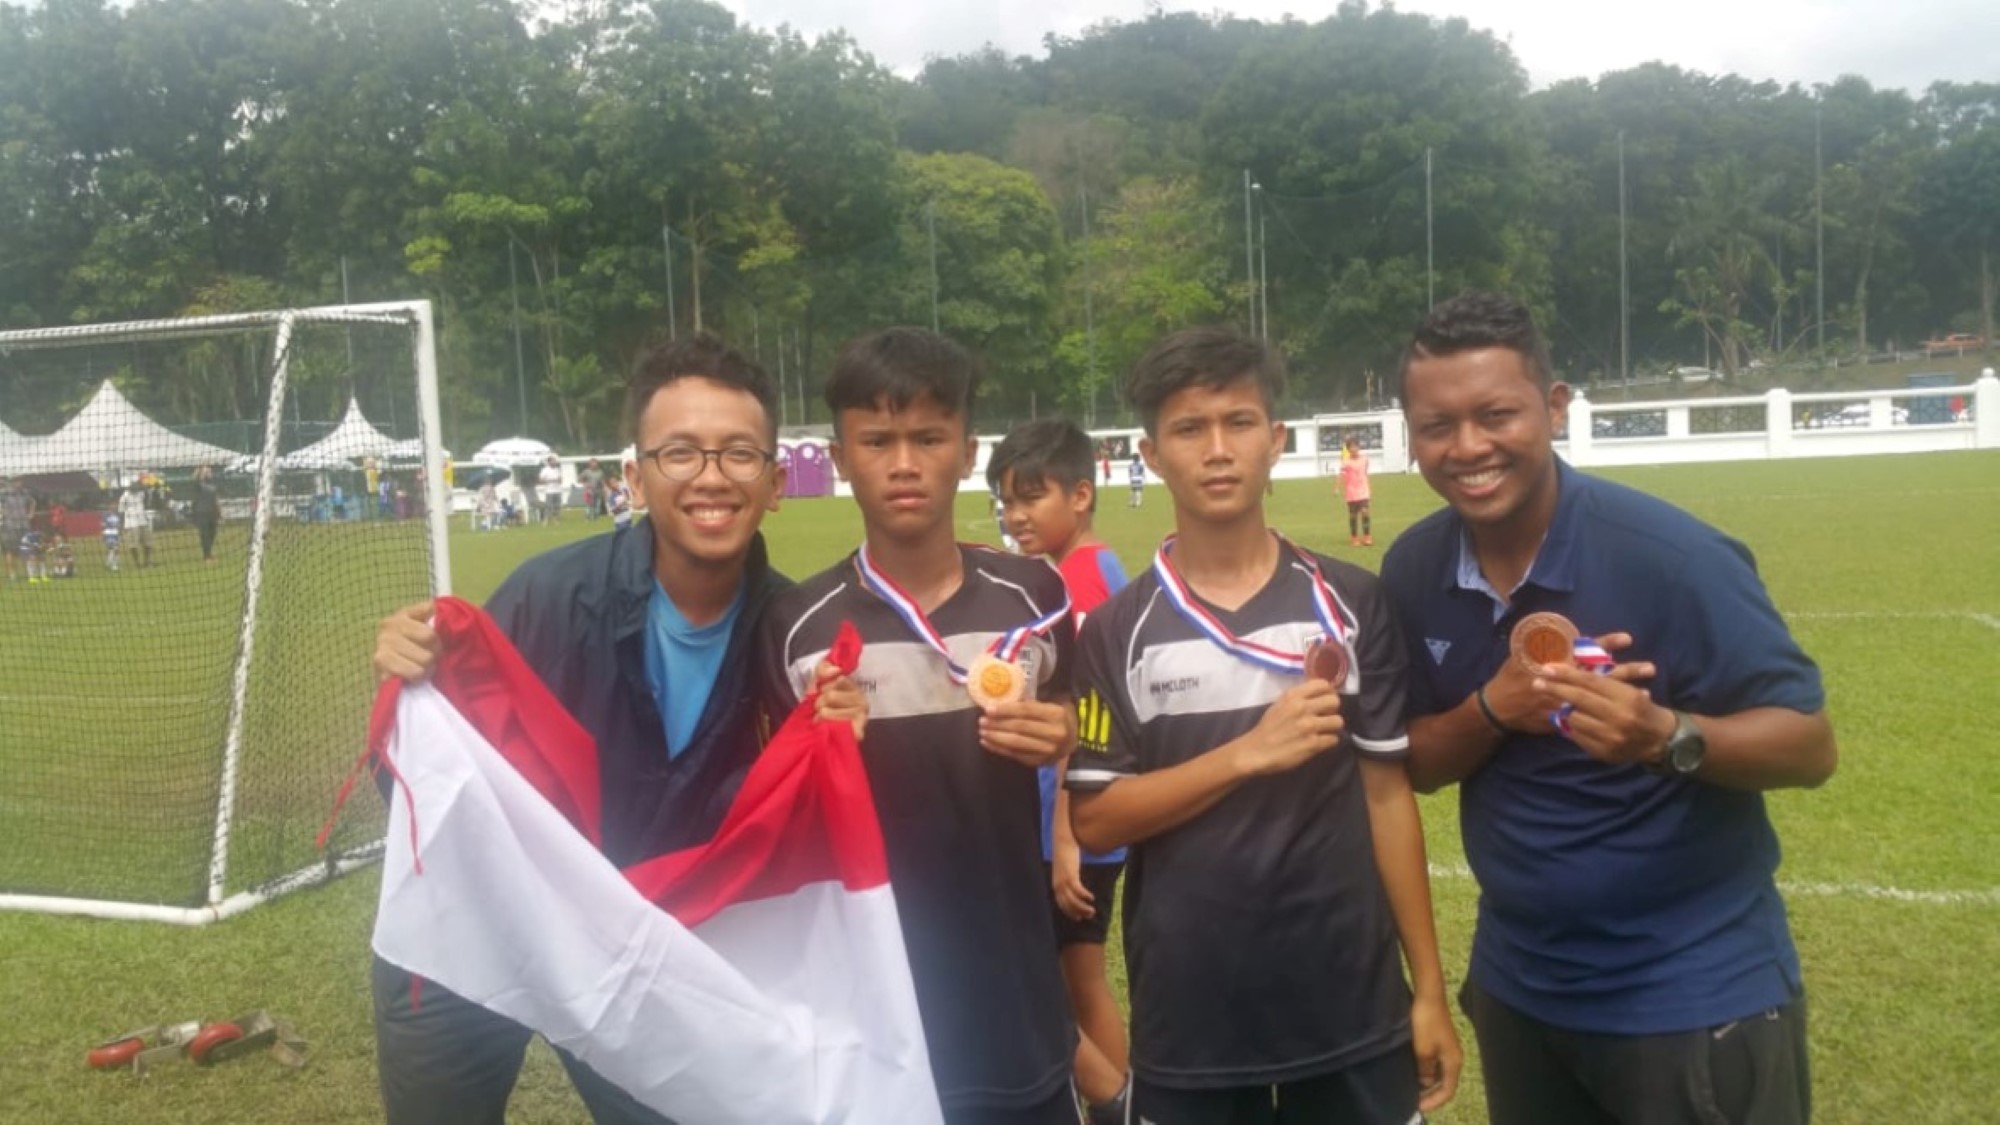 Guttene viser frem medaljer på fotballbanen